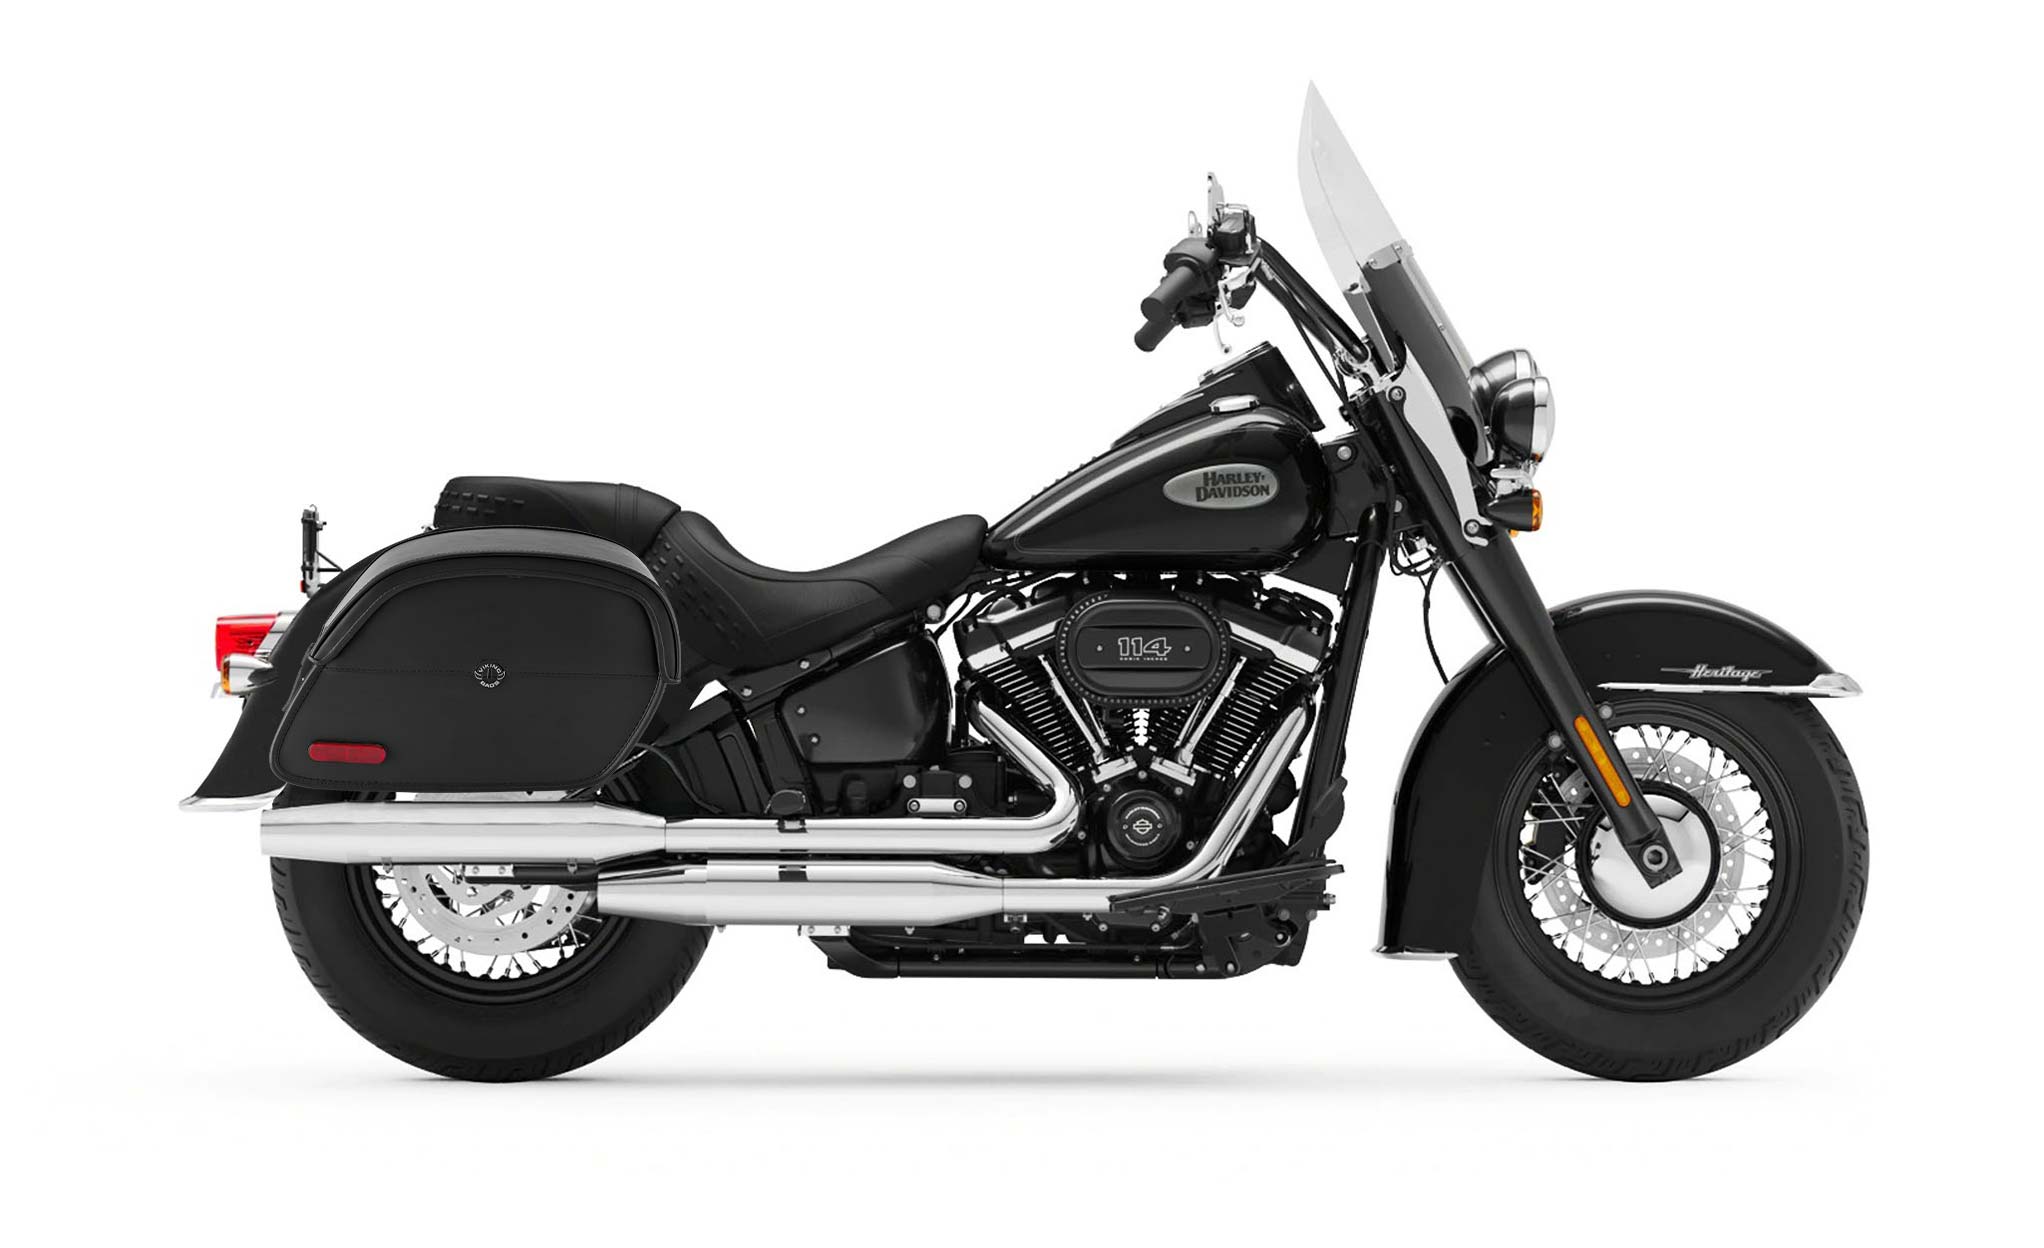 Viking California Large Leather Motorcycle Saddlebags For Harley Davidson Softail Heritage Flst I C Ci on Bike Photo @expand